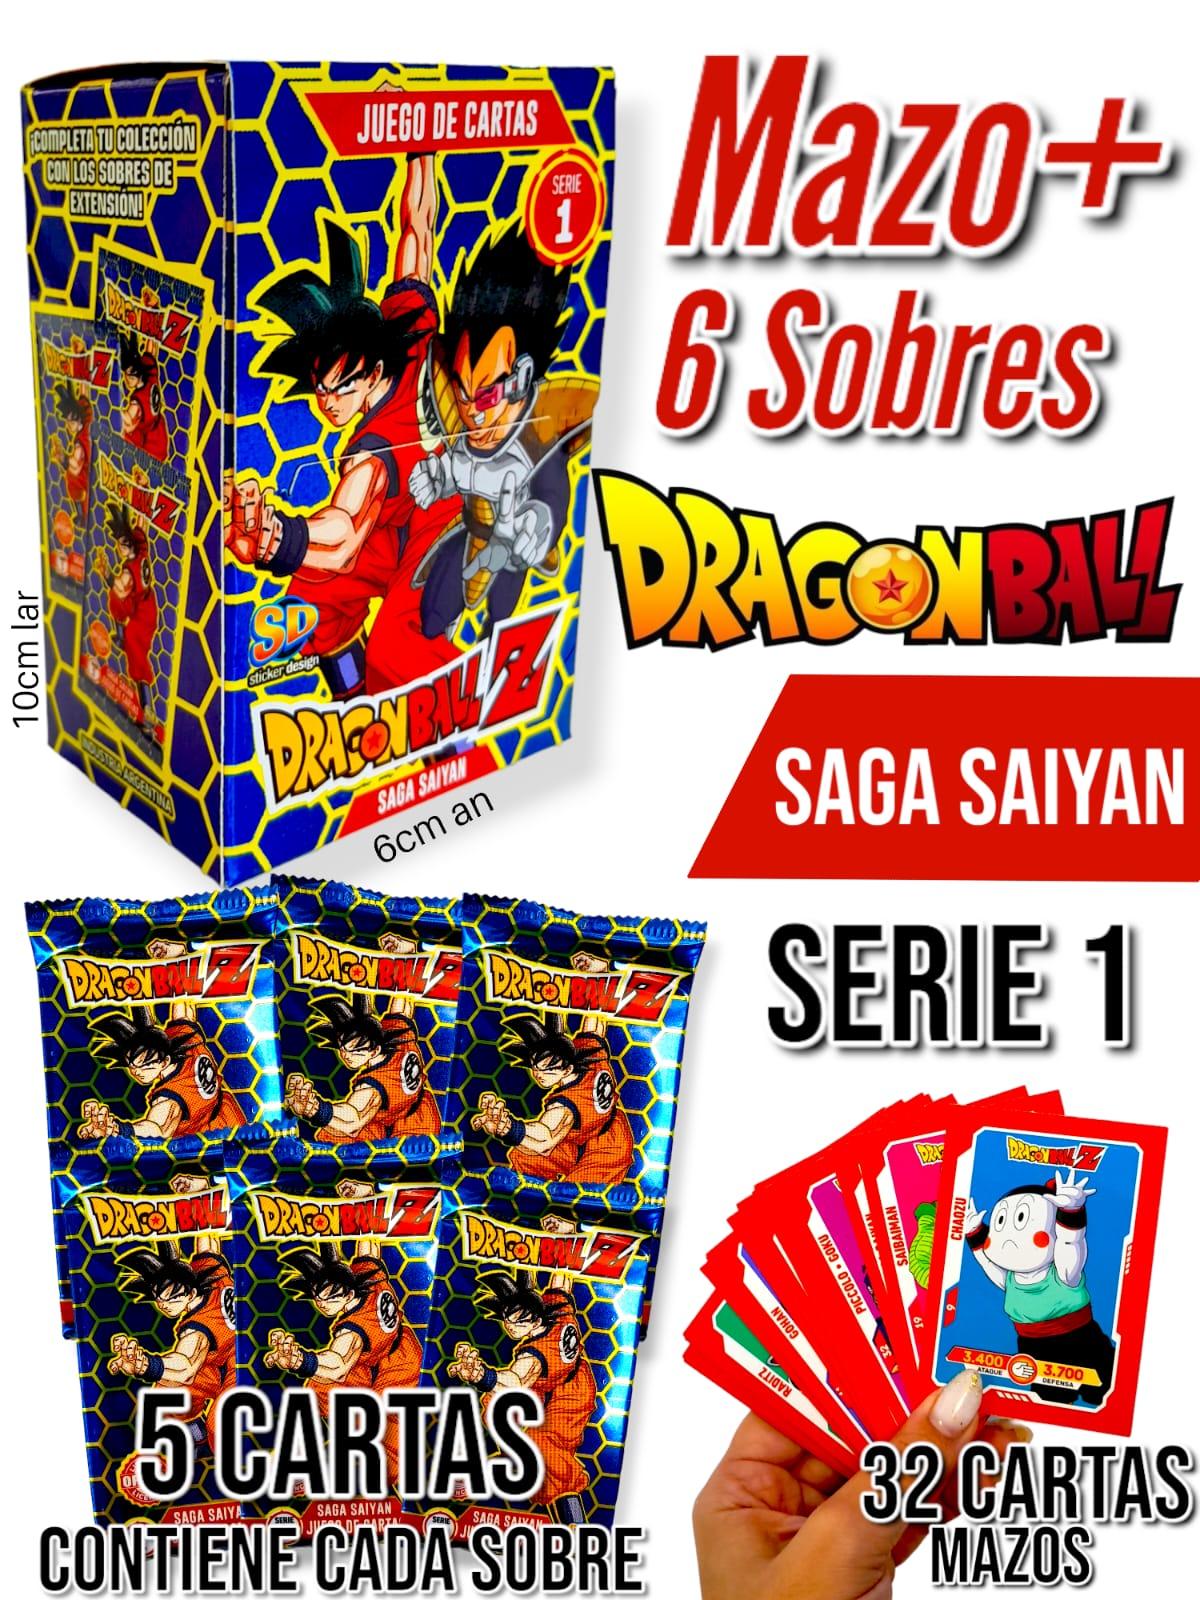 Mazo+ 6 Sobres Dragon Ball Z Saga Saiyan Serie 1 